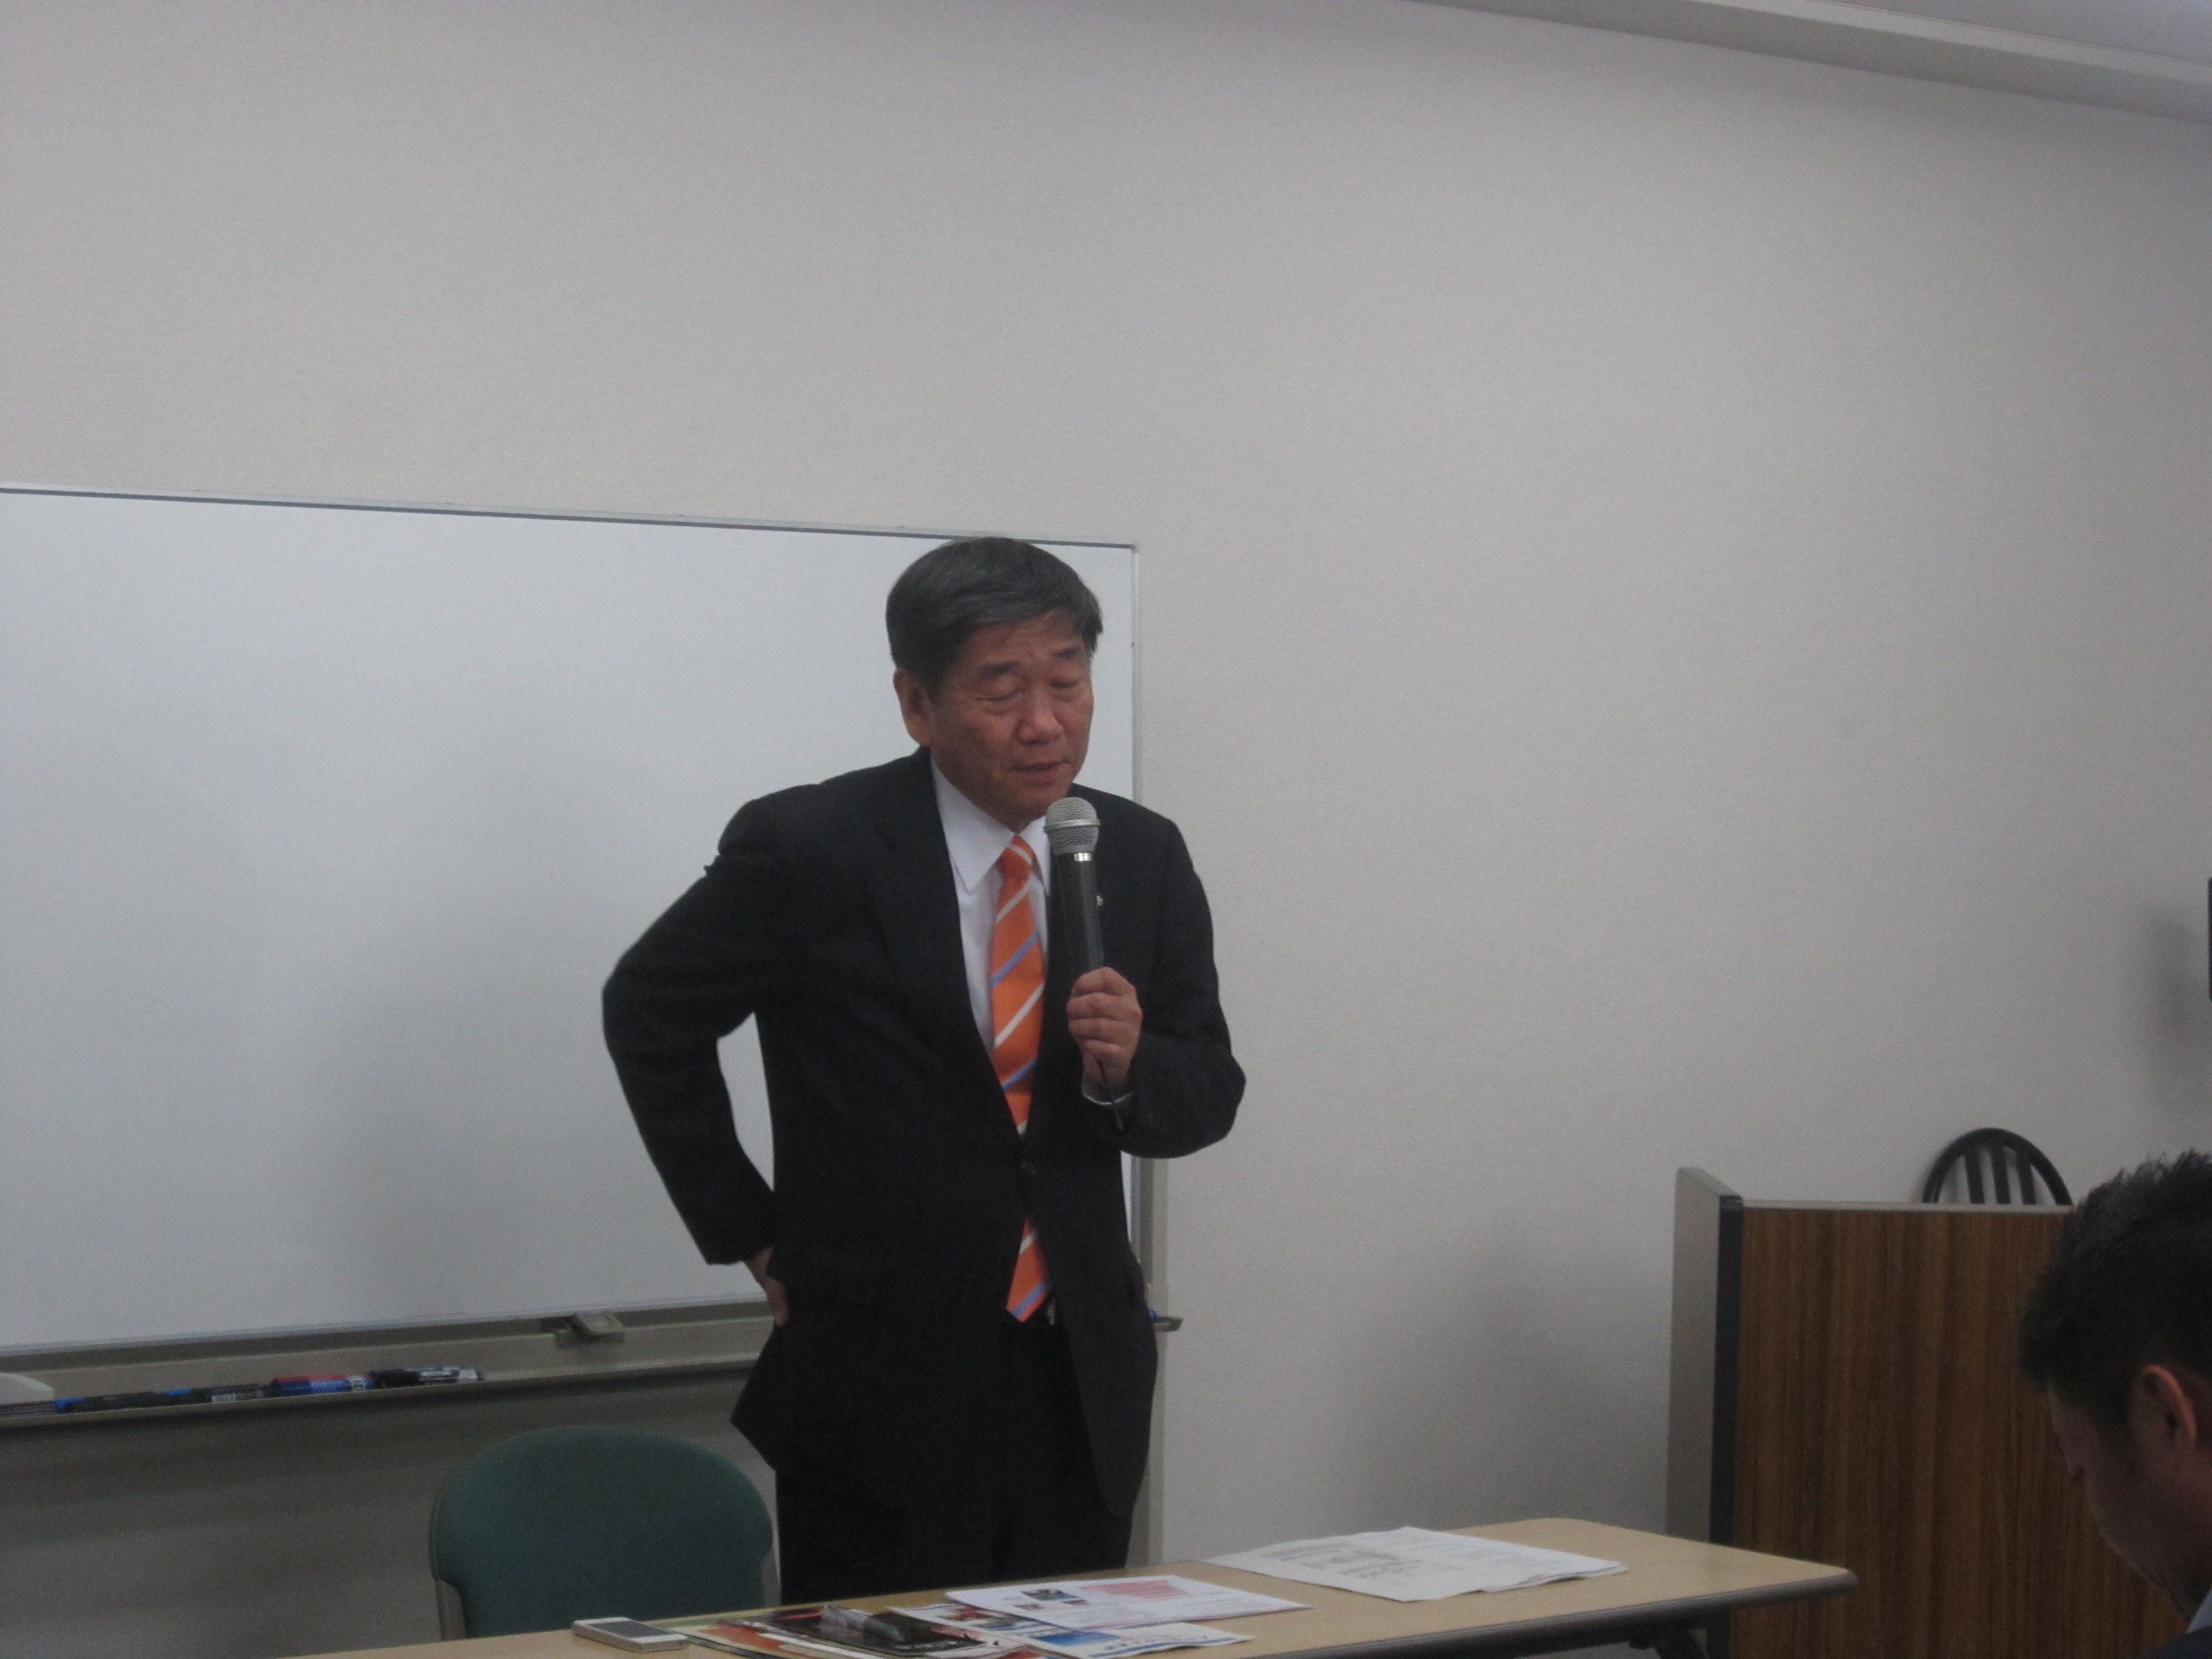 IMG 1903 - 2012年11月27日AOsuki第4回勉強会八戸市小林市長